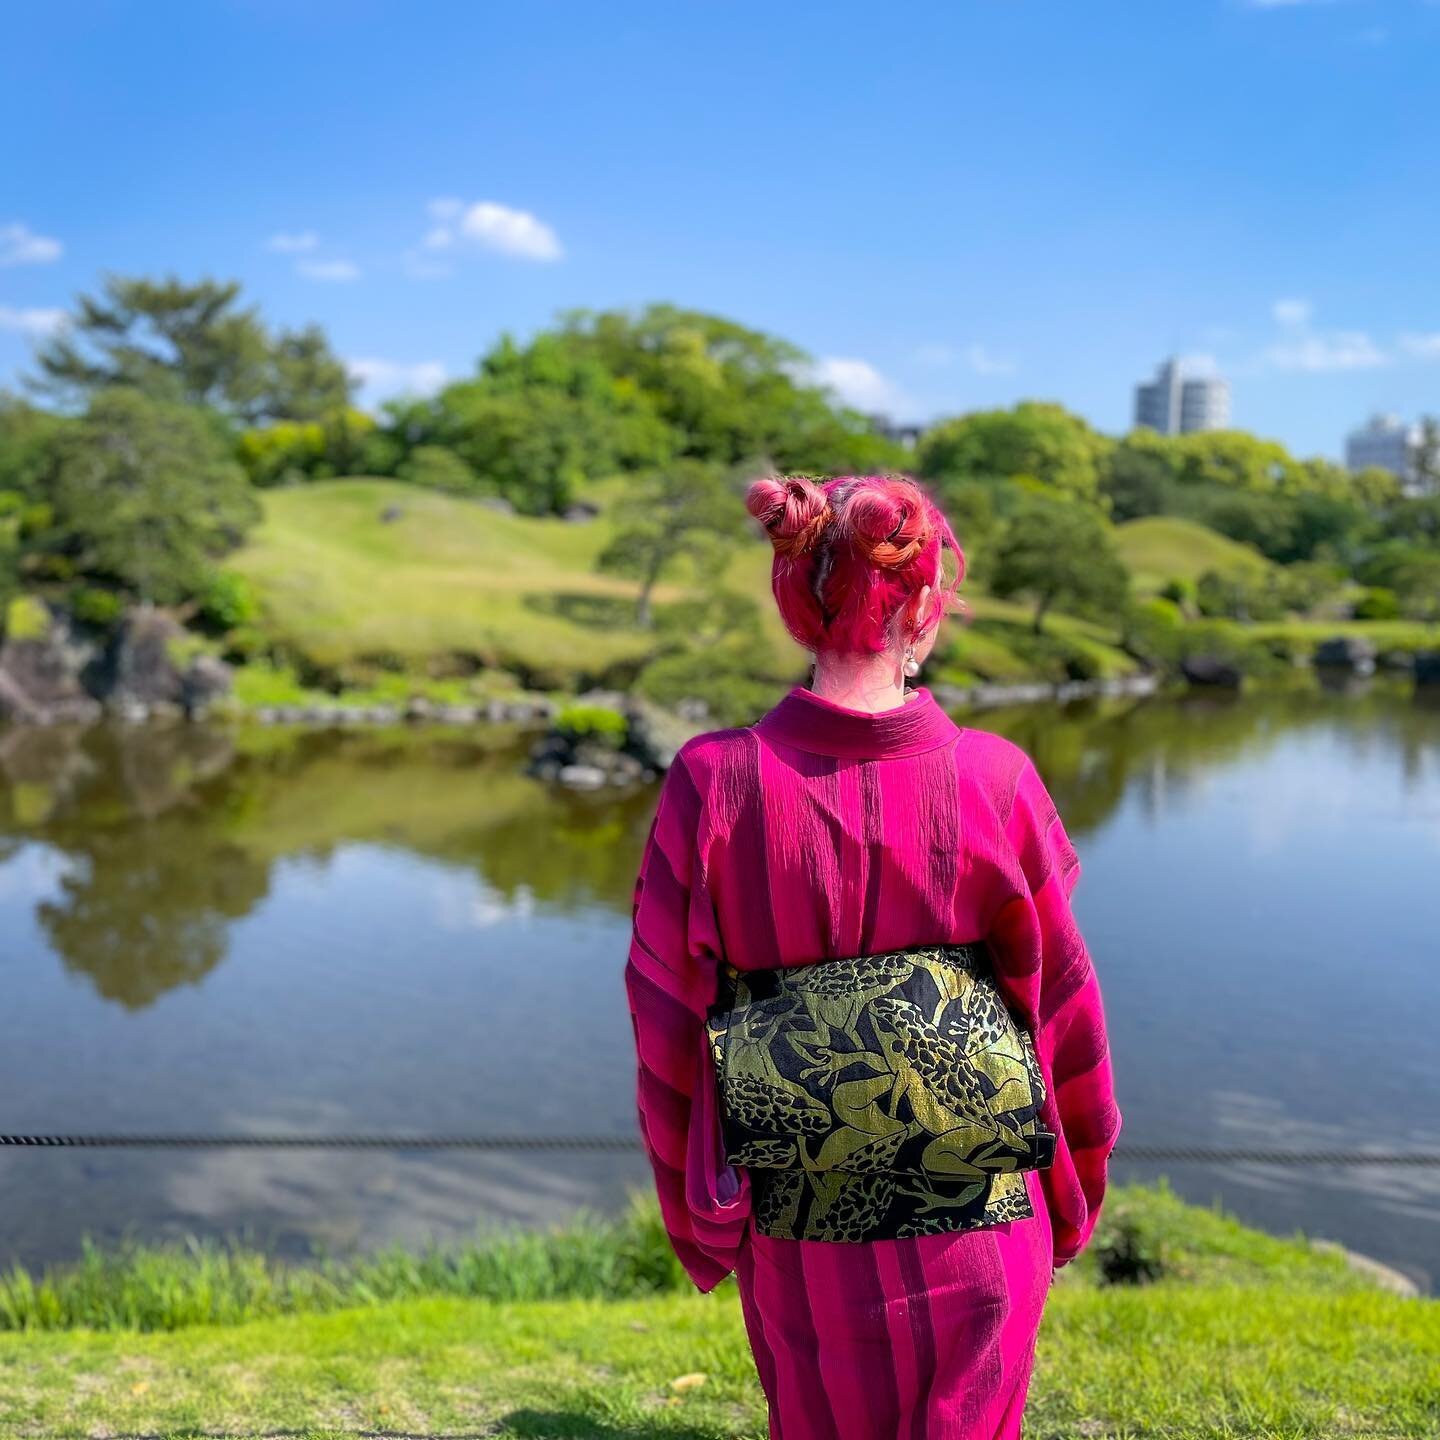 日本で一番好きな場所の一つは水前寺成趣園です。熊本市の真ん中にある豊かな緑と透明な水を楽しめる静かな日本庭園です。日本一の美しい庭園と言っても、大袈裟ではないと思います。私は庭やガーデニングが好きなので、色んな庭園を巡っていますけど、水前寺成趣園ほどに感動する庭園がなかなか見つからないです。だから、友達が遊びに来ると、必ず連れて来ます☺️
.
One of my favorite places in Japan: Suizenji Park! It is a beautiful green sp